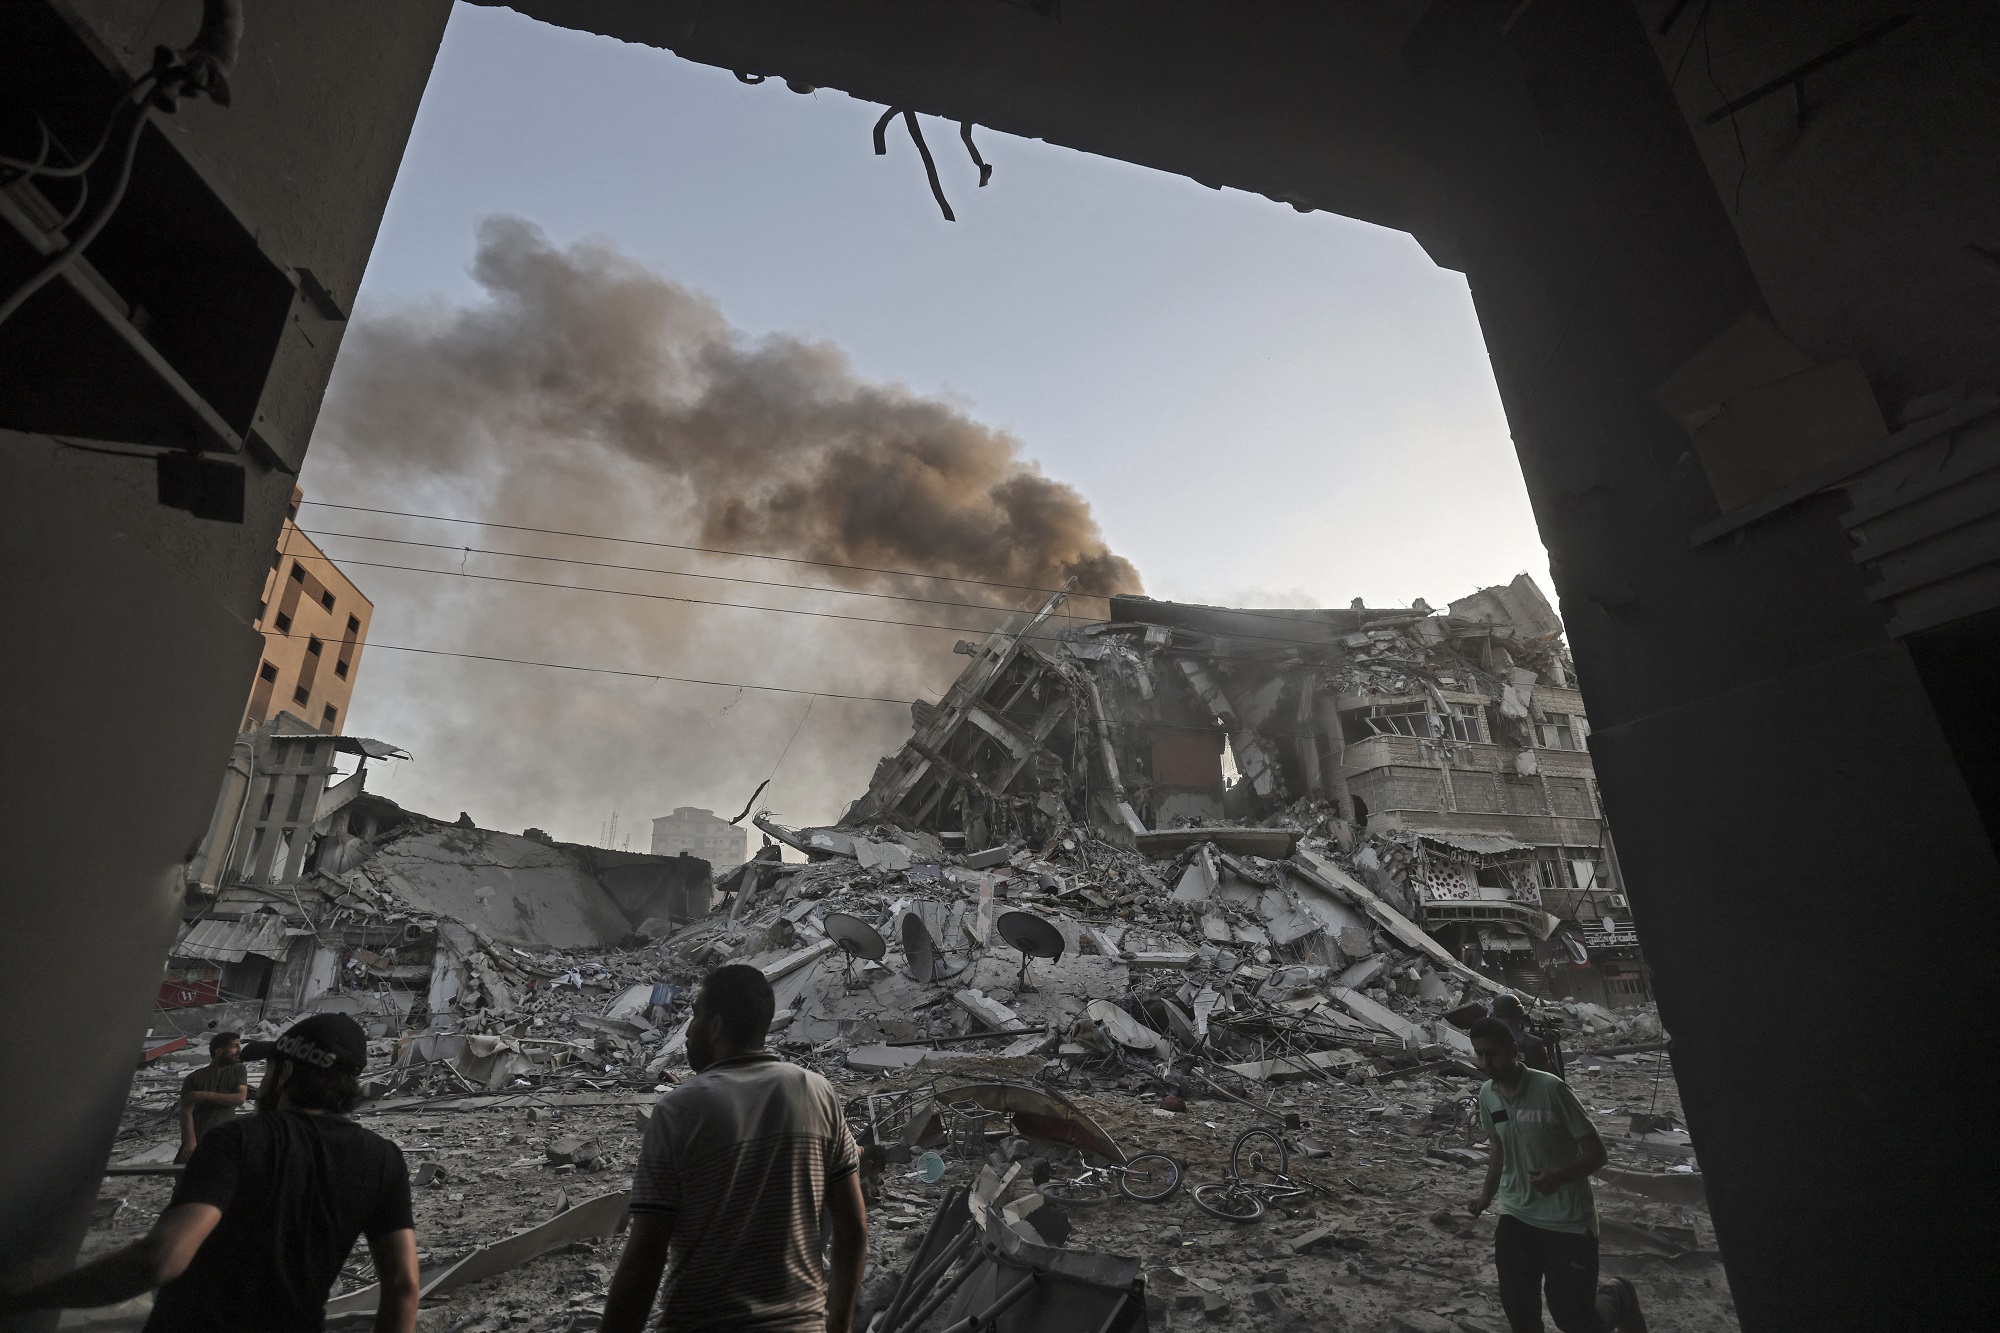 تجمع وسط الأنقاض أمام برج الشروق الذي انهار بعد استهدافه بغارة جوية إسرائيلية في قطاع غزة. 12 مايو/أيار 2021. (أ ف ب)